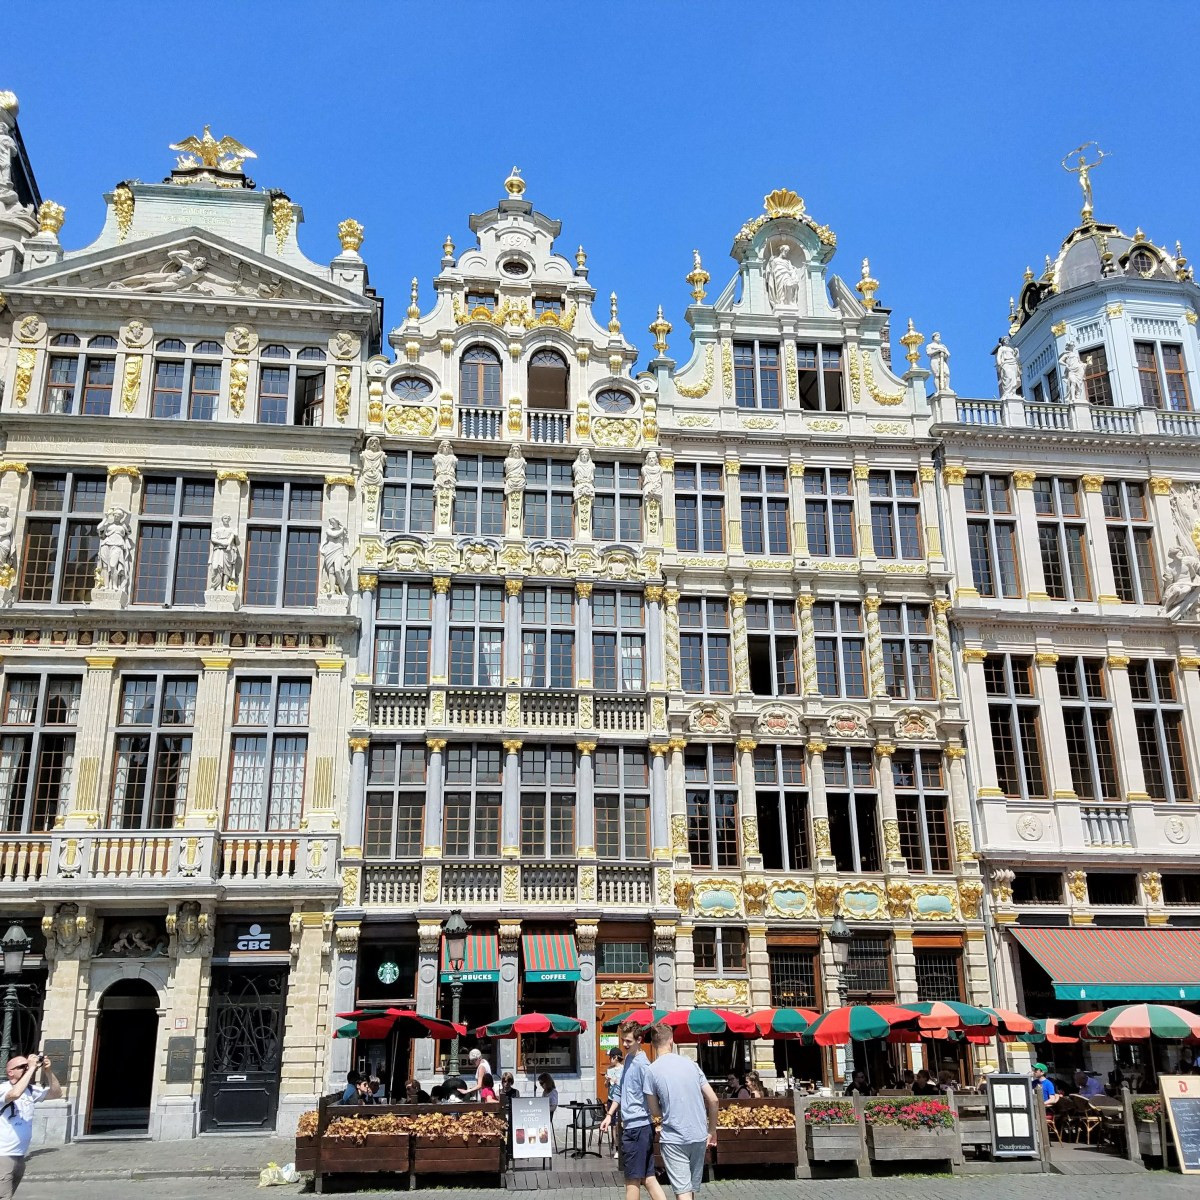 10 Top Attractions in Brussels, Belgium